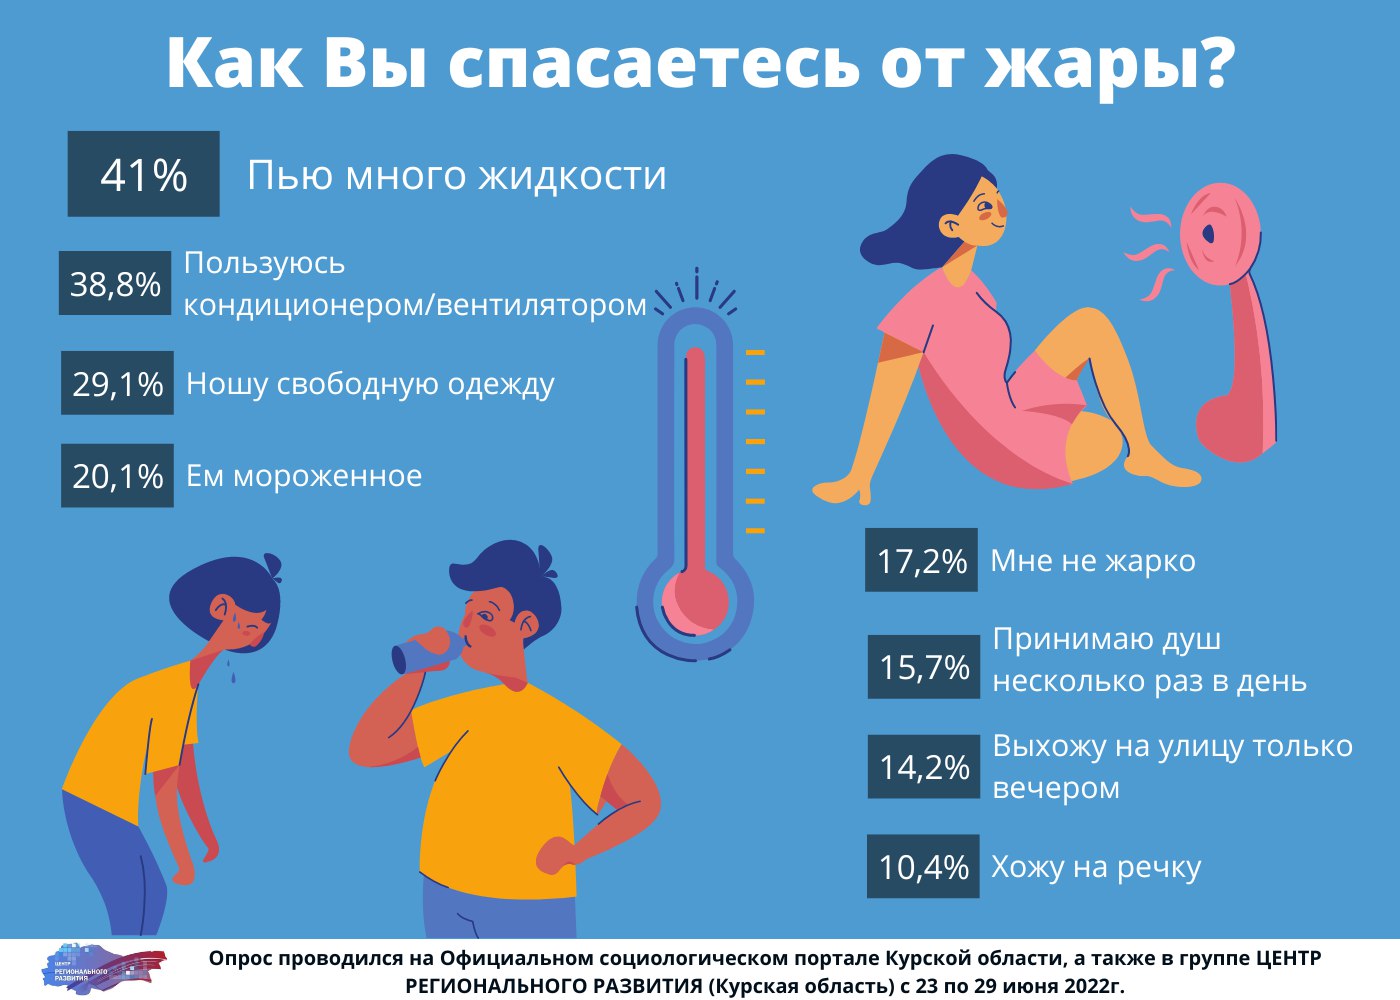 Что пить в жару. Инфографика про жару. Что нужно пить в жаркую погоду. Питье в жару инфографика роспотреб.